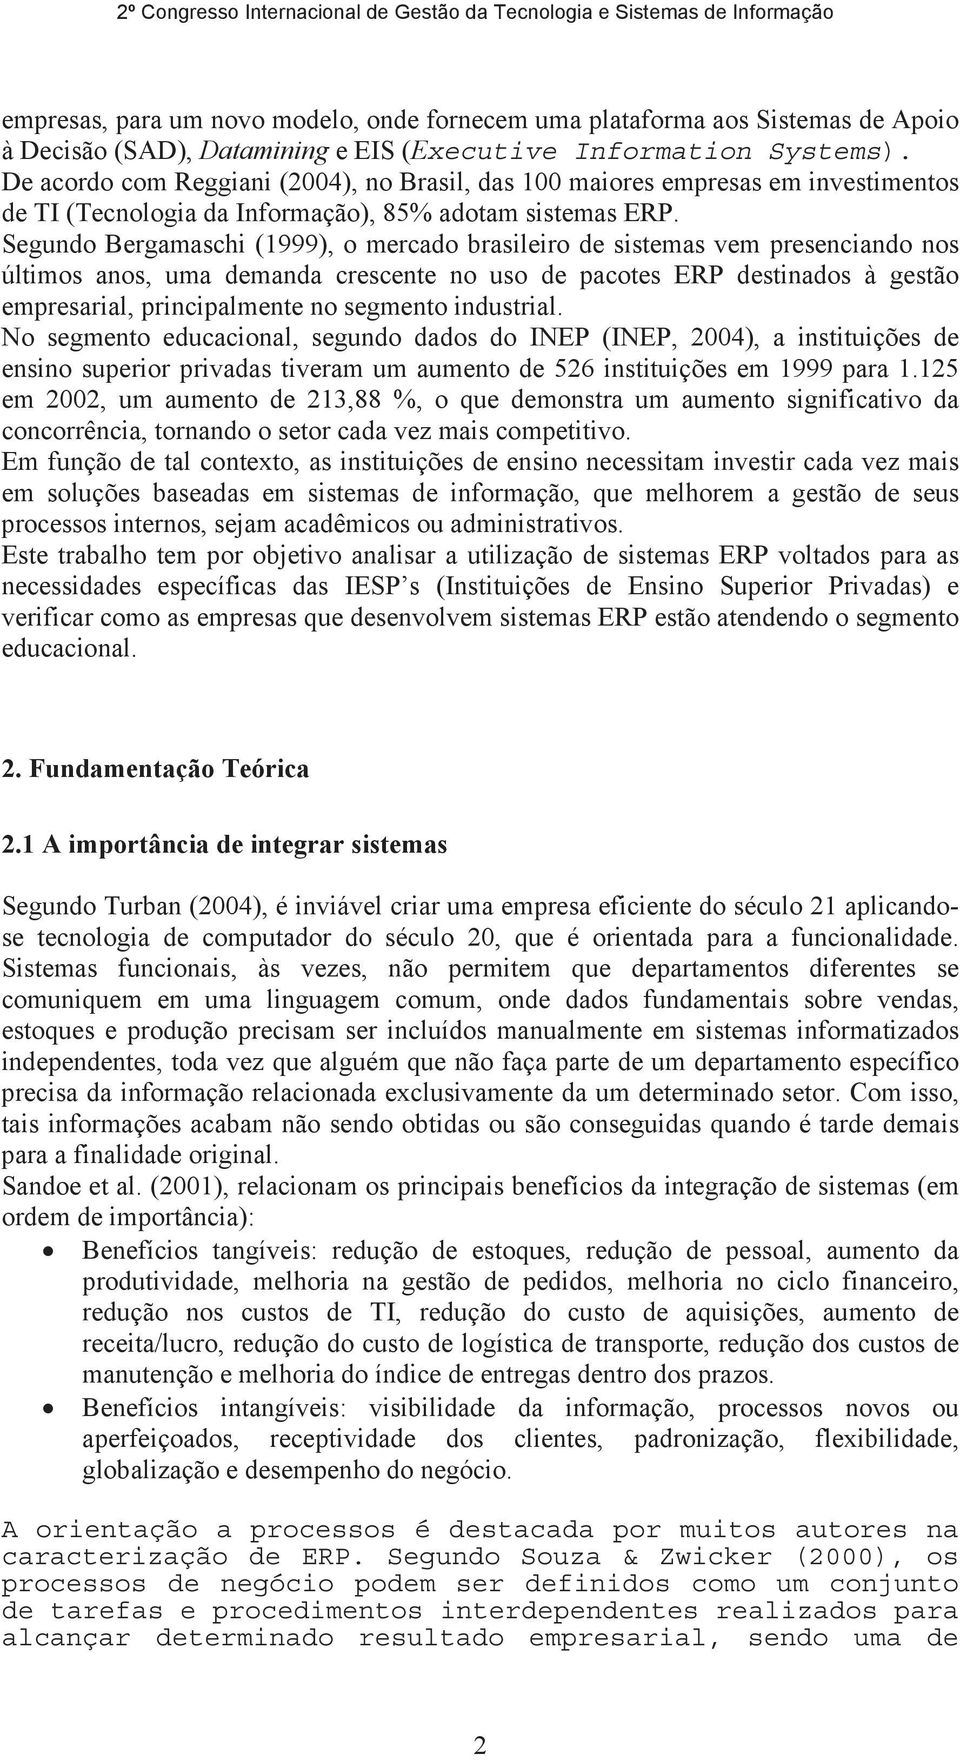 Segundo Bergamaschi (1999), o mercado brasileiro de sistemas vem presenciando nos últimos anos, uma demanda crescente no uso de pacotes ERP destinados à gestão empresarial, principalmente no segmento